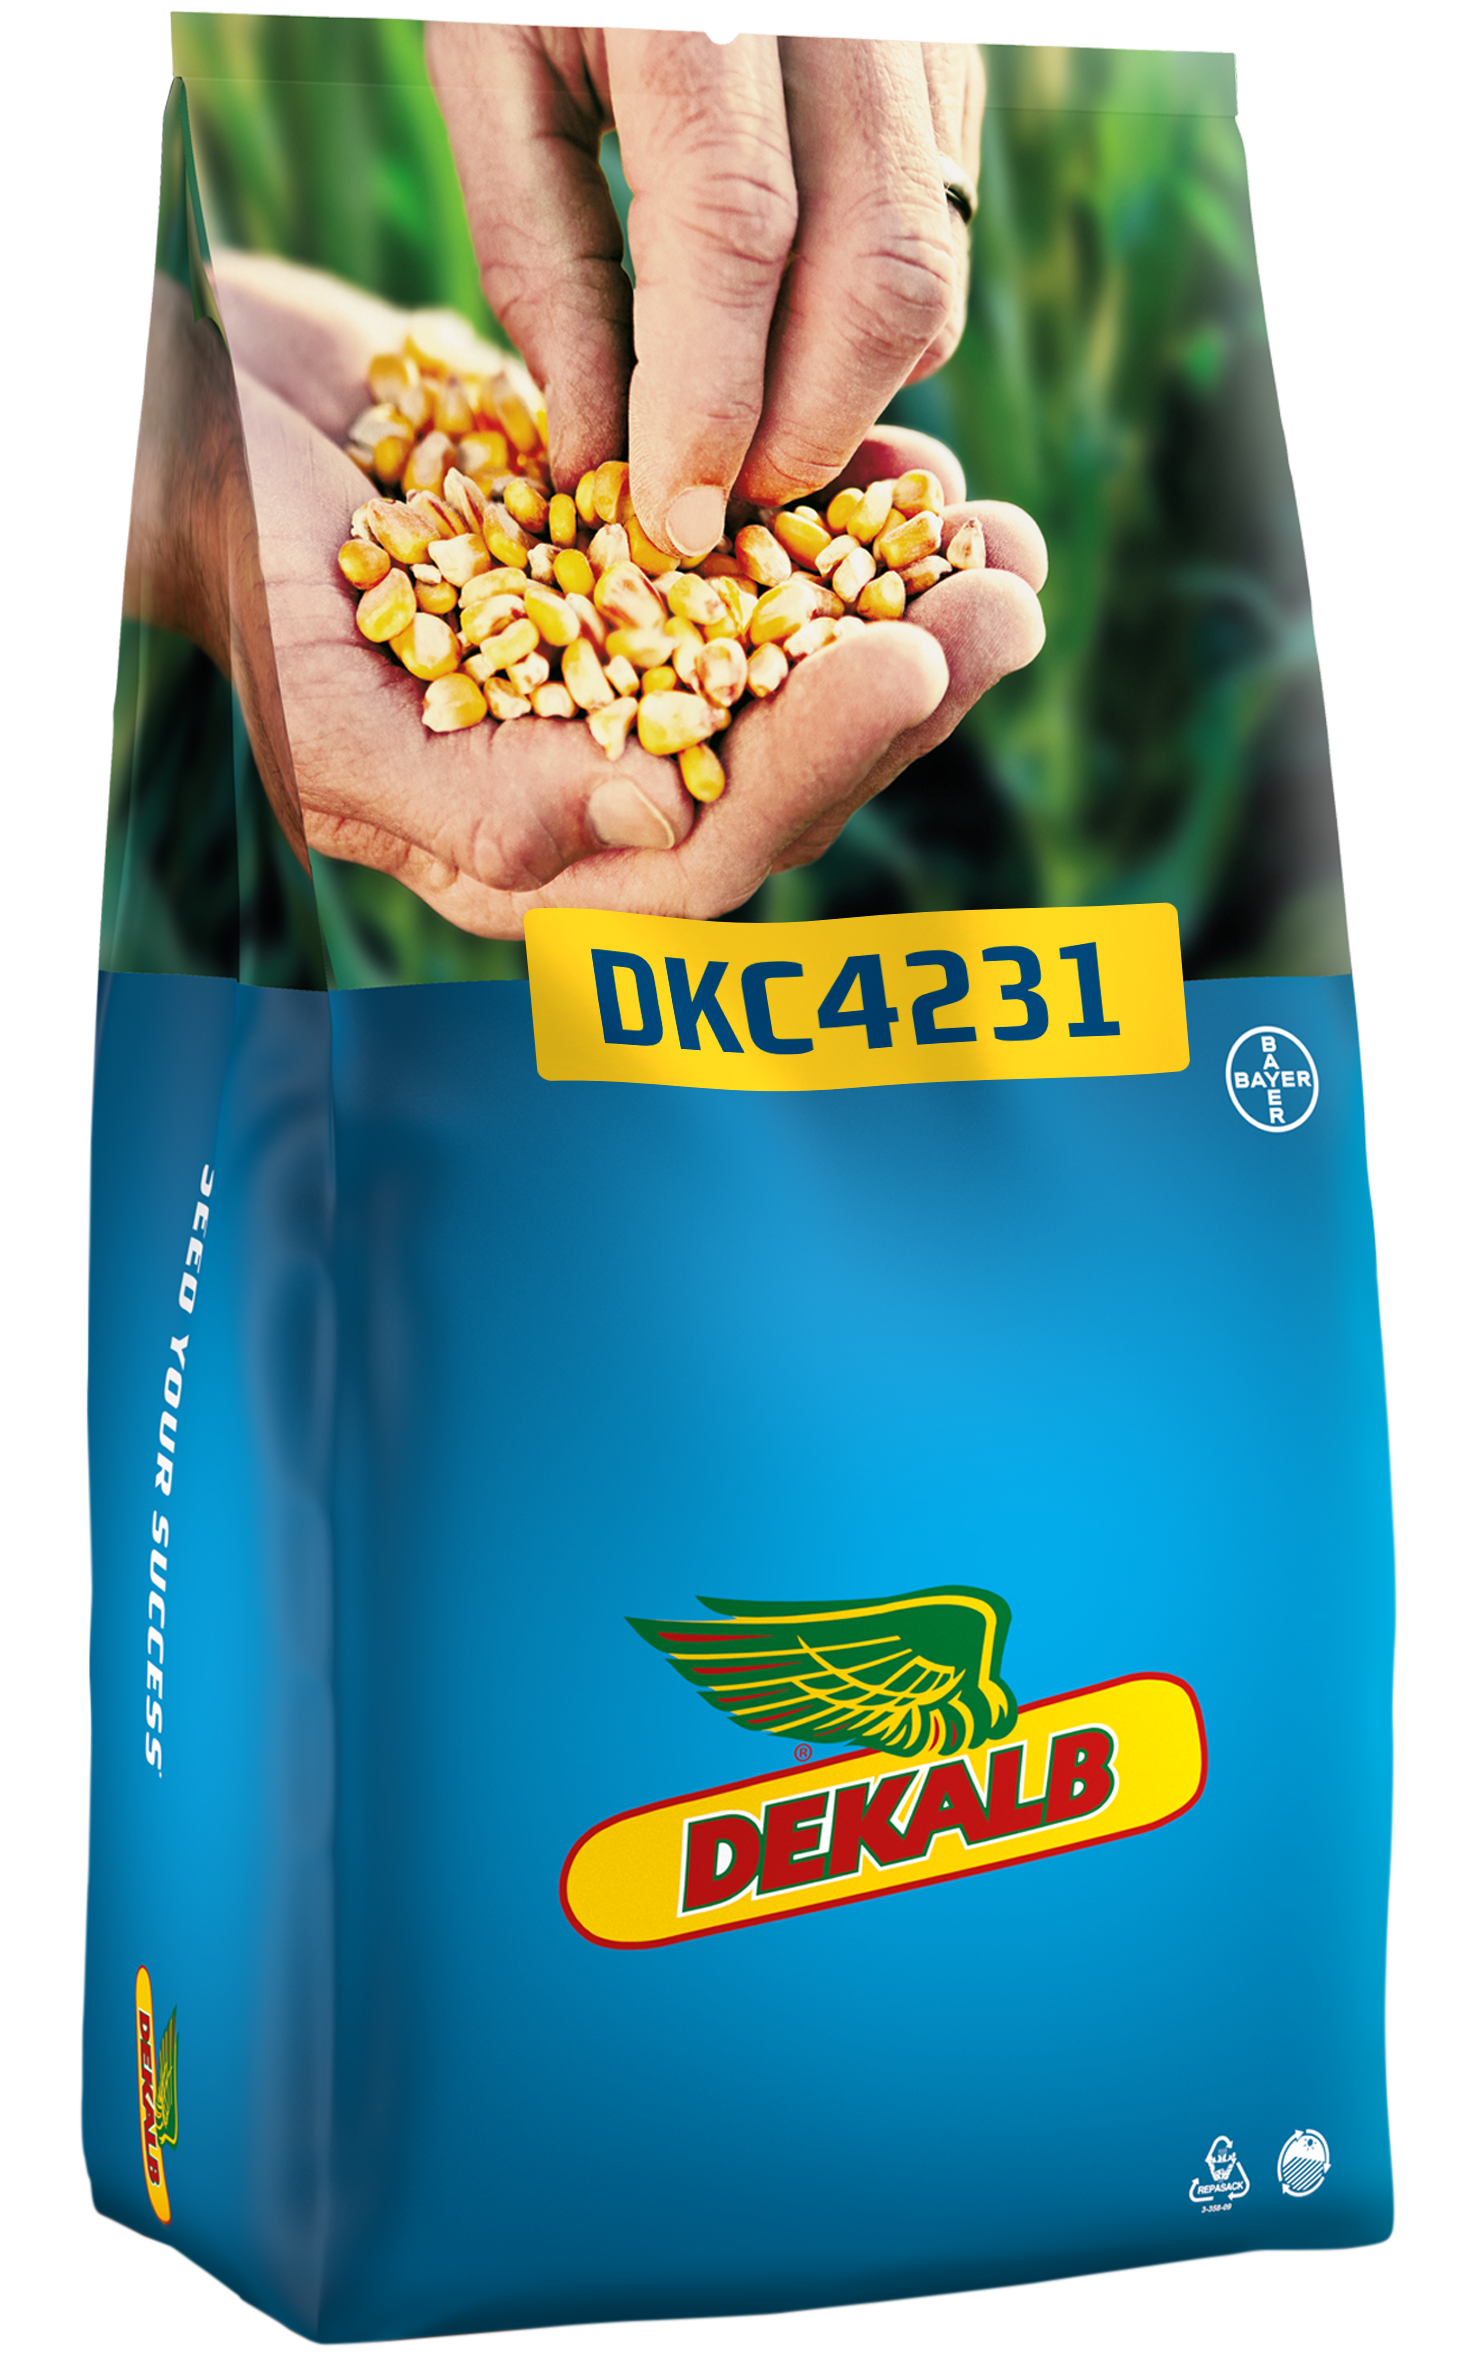 DKC4231